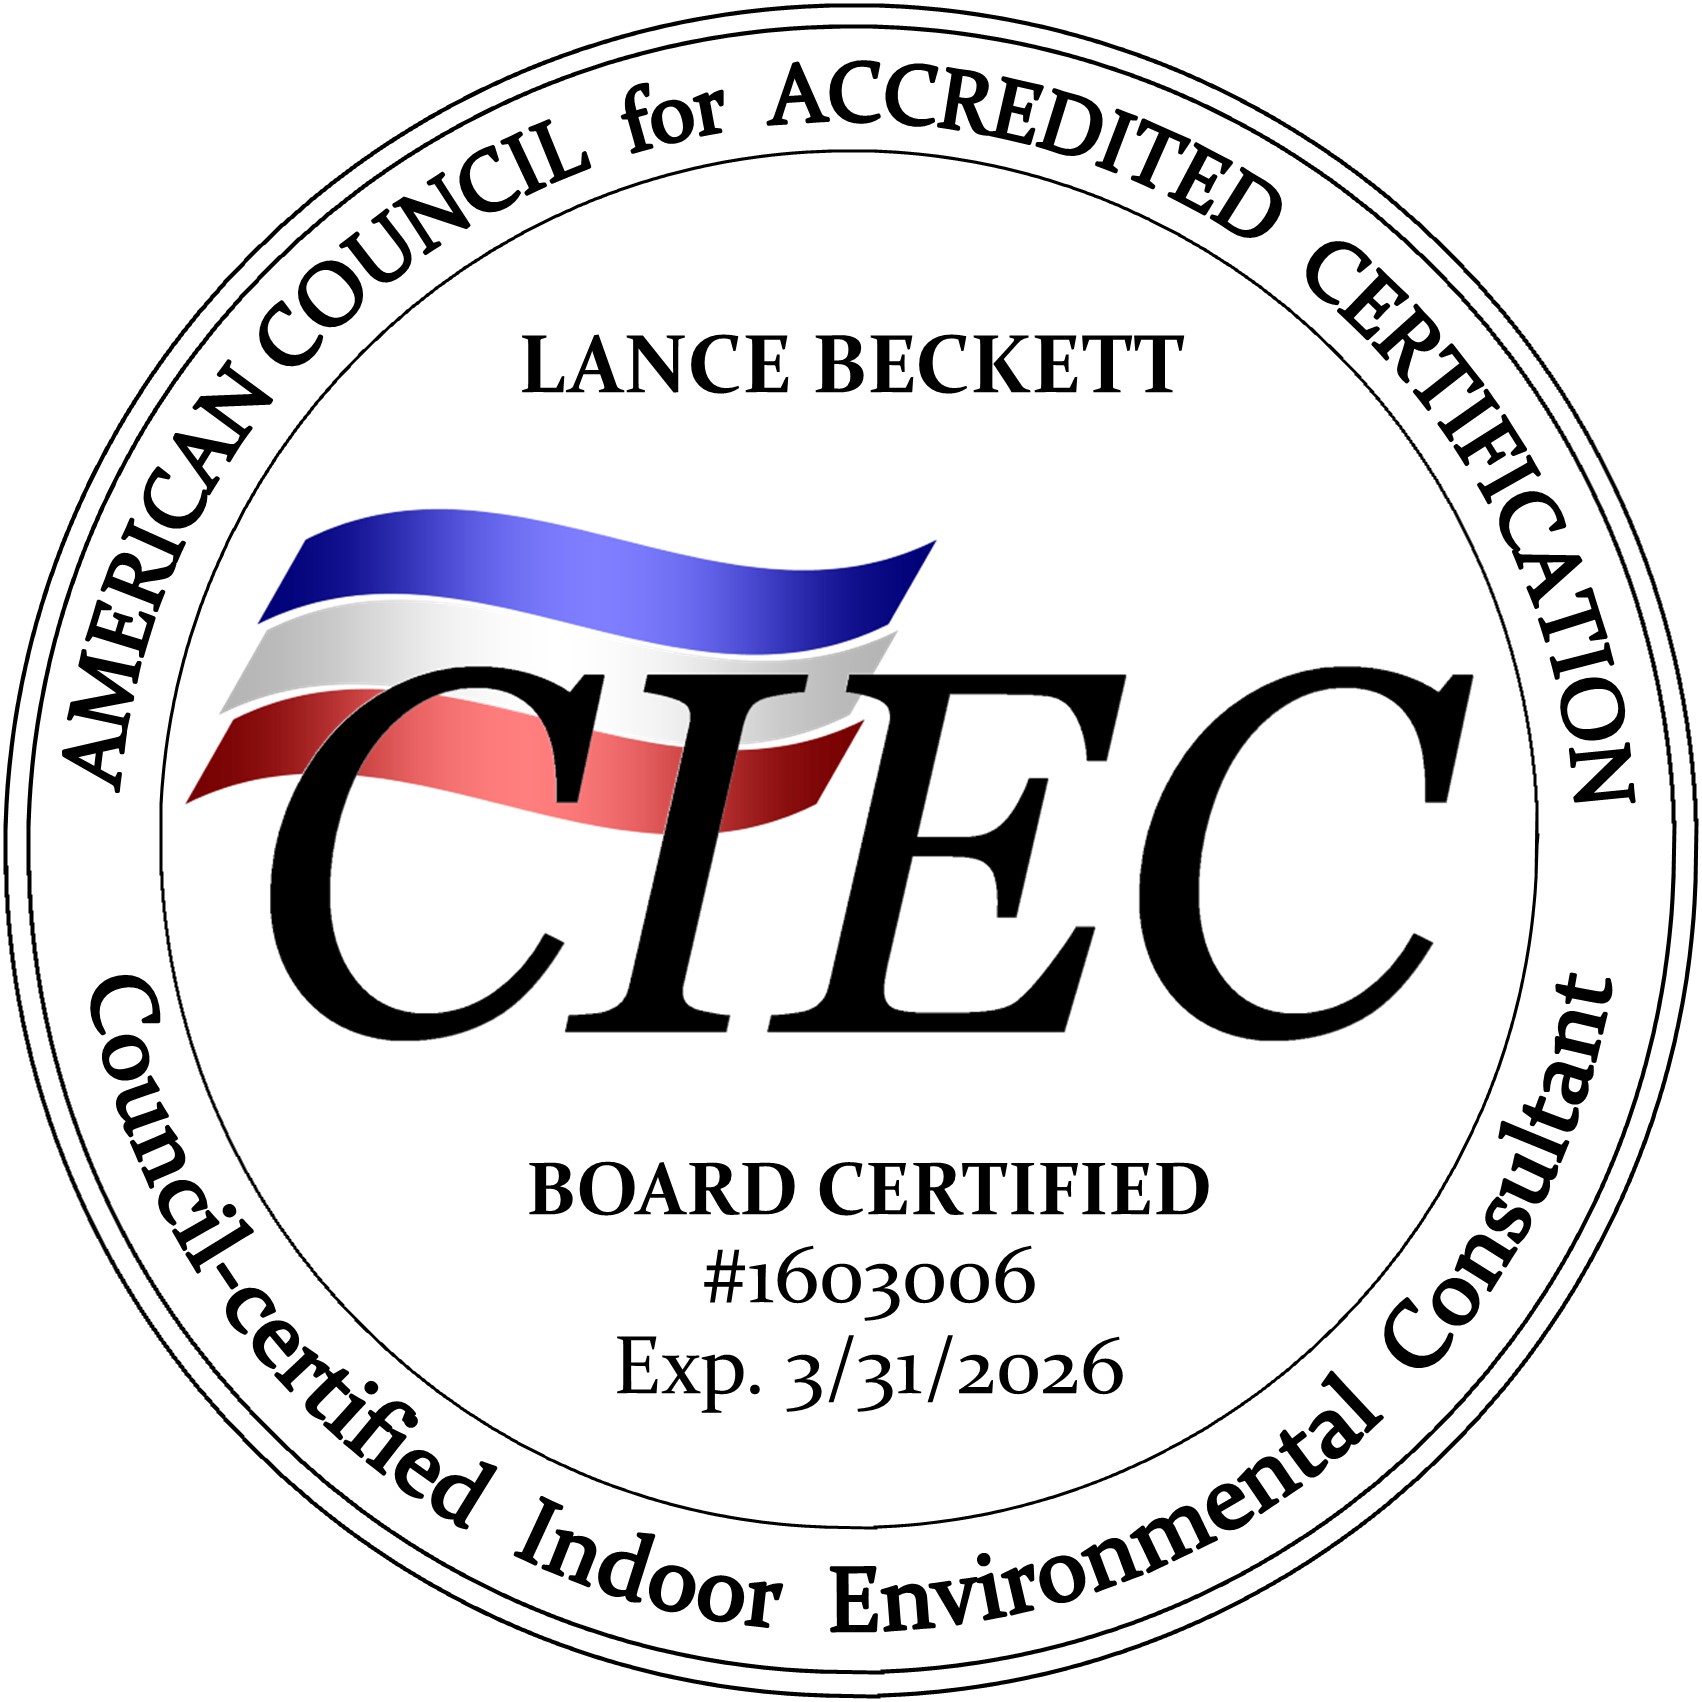 Lance Beckett CIEC seal